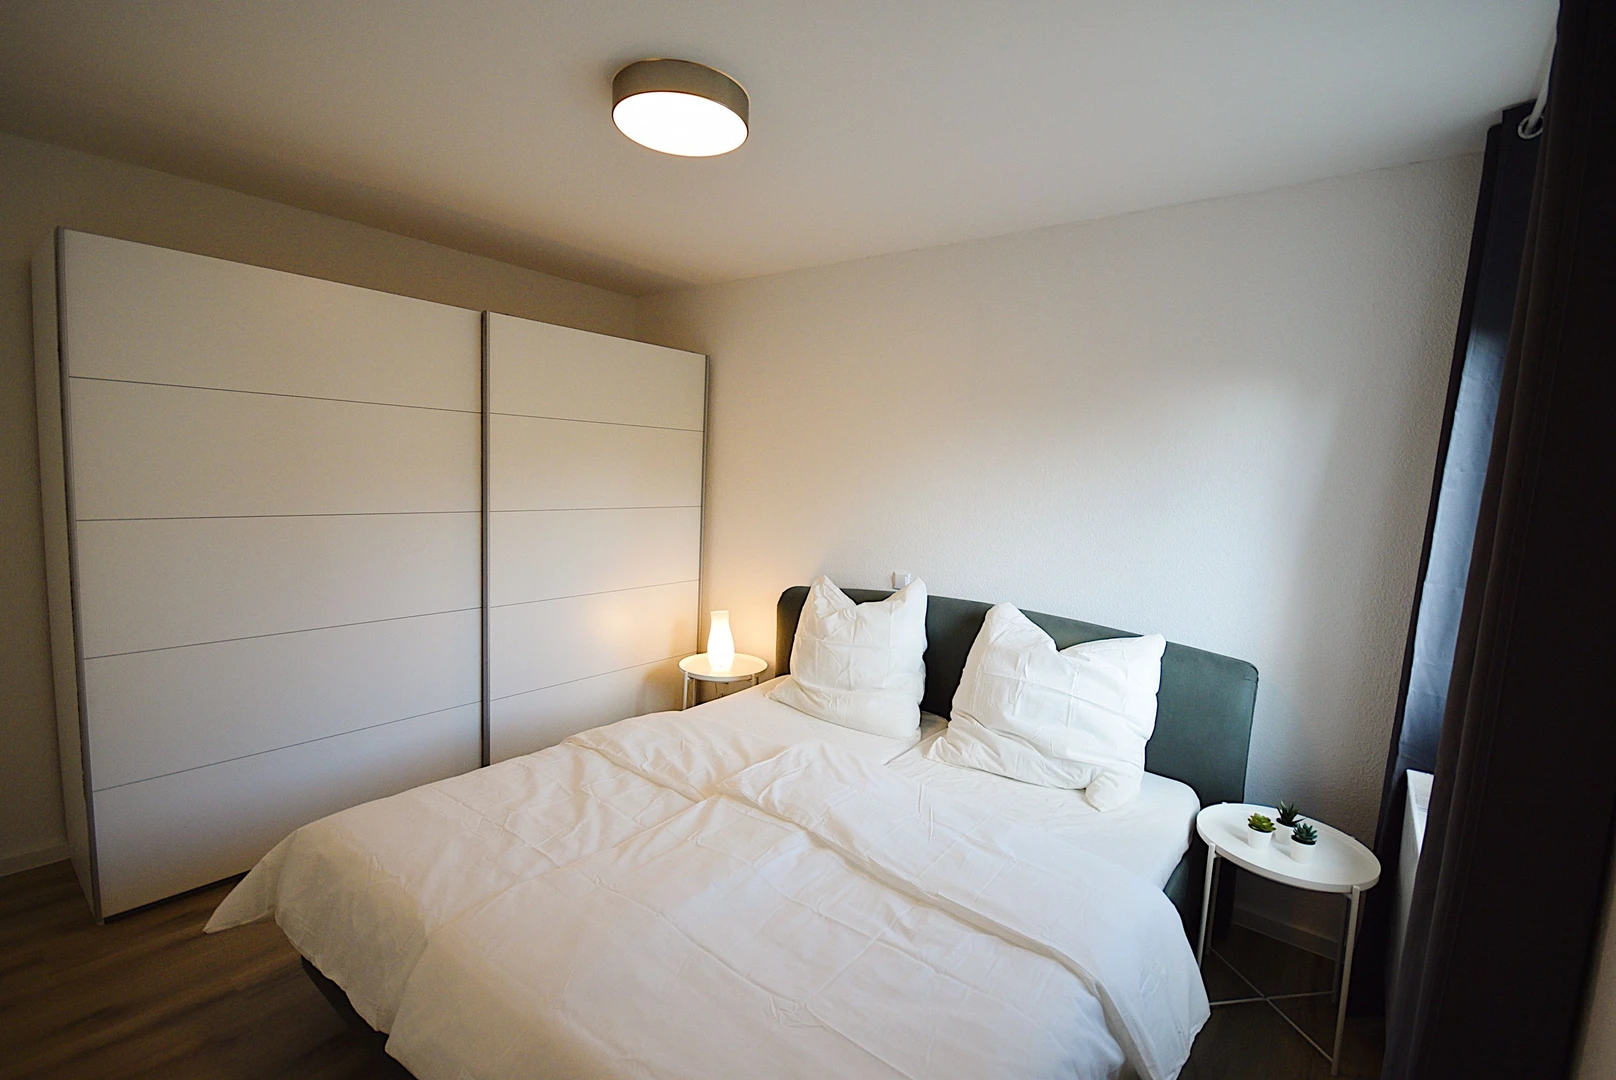 Leipzig de çift kişilik yataklı kiralık oda